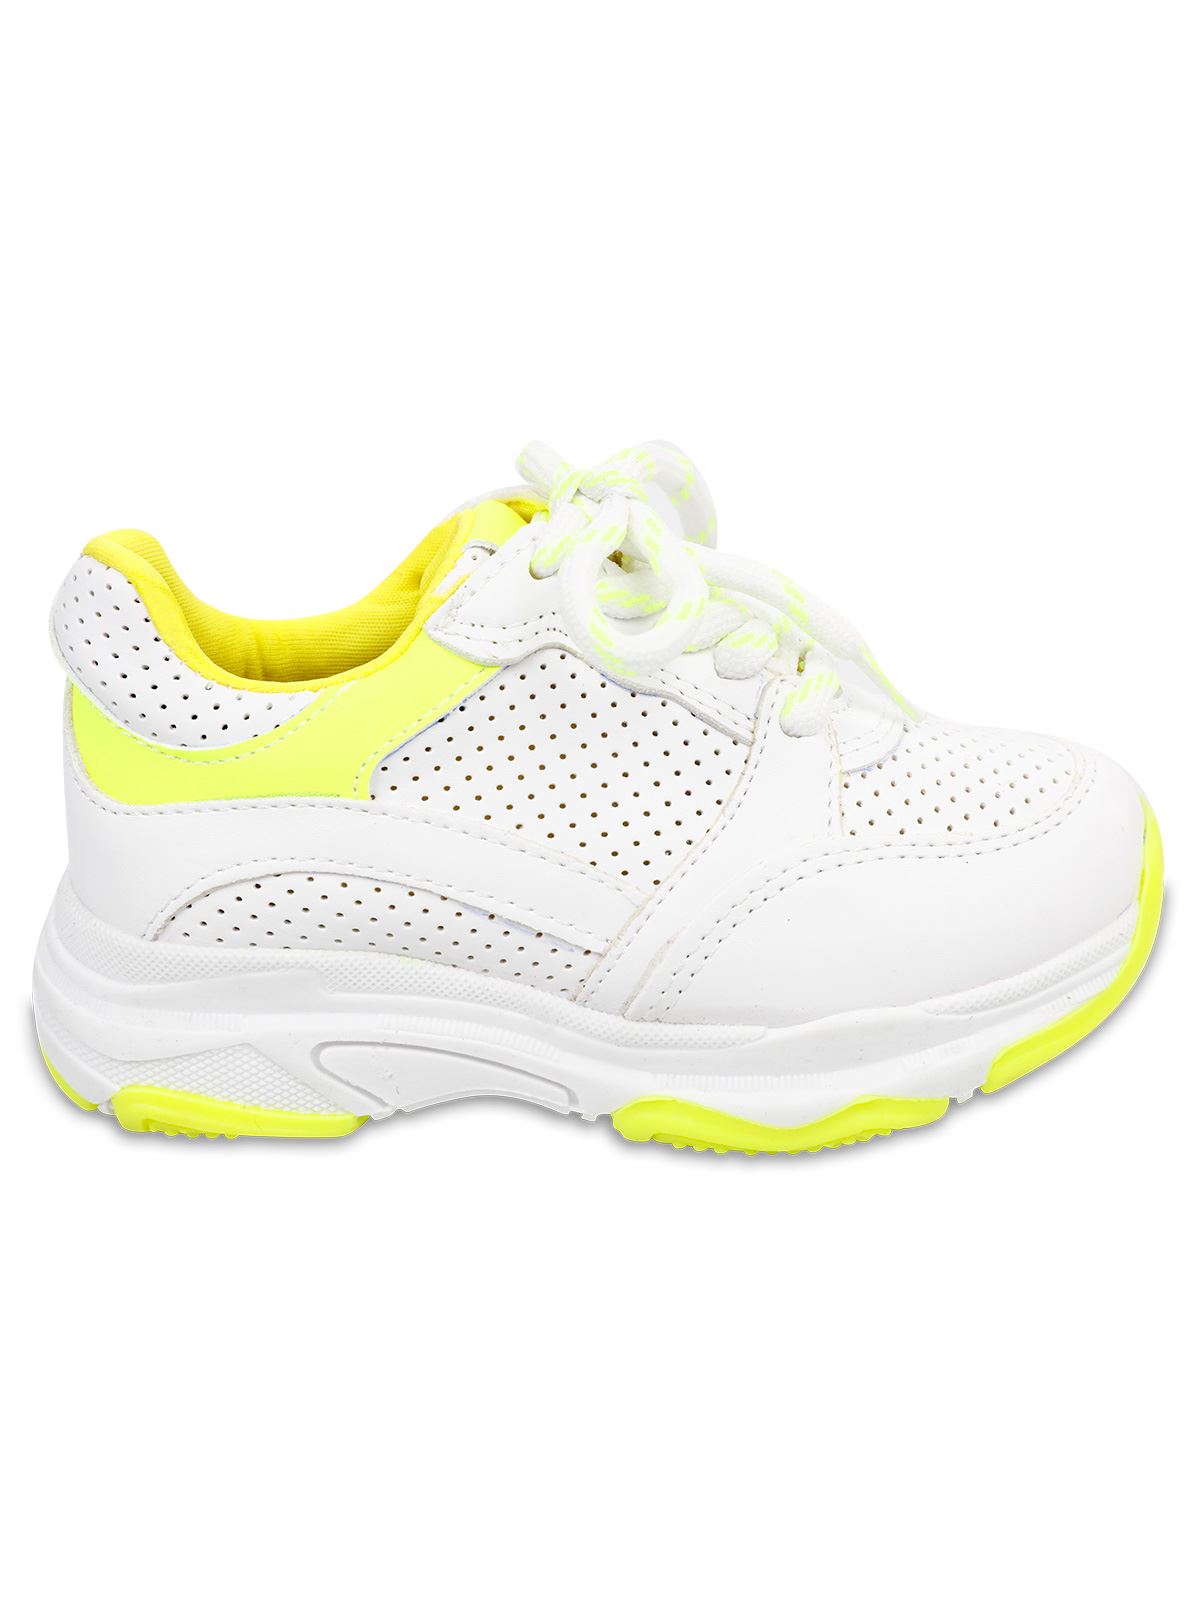 Harli Kız Çocuk Spor Ayakkabı 31-35 Numara Beyaz-Sarı